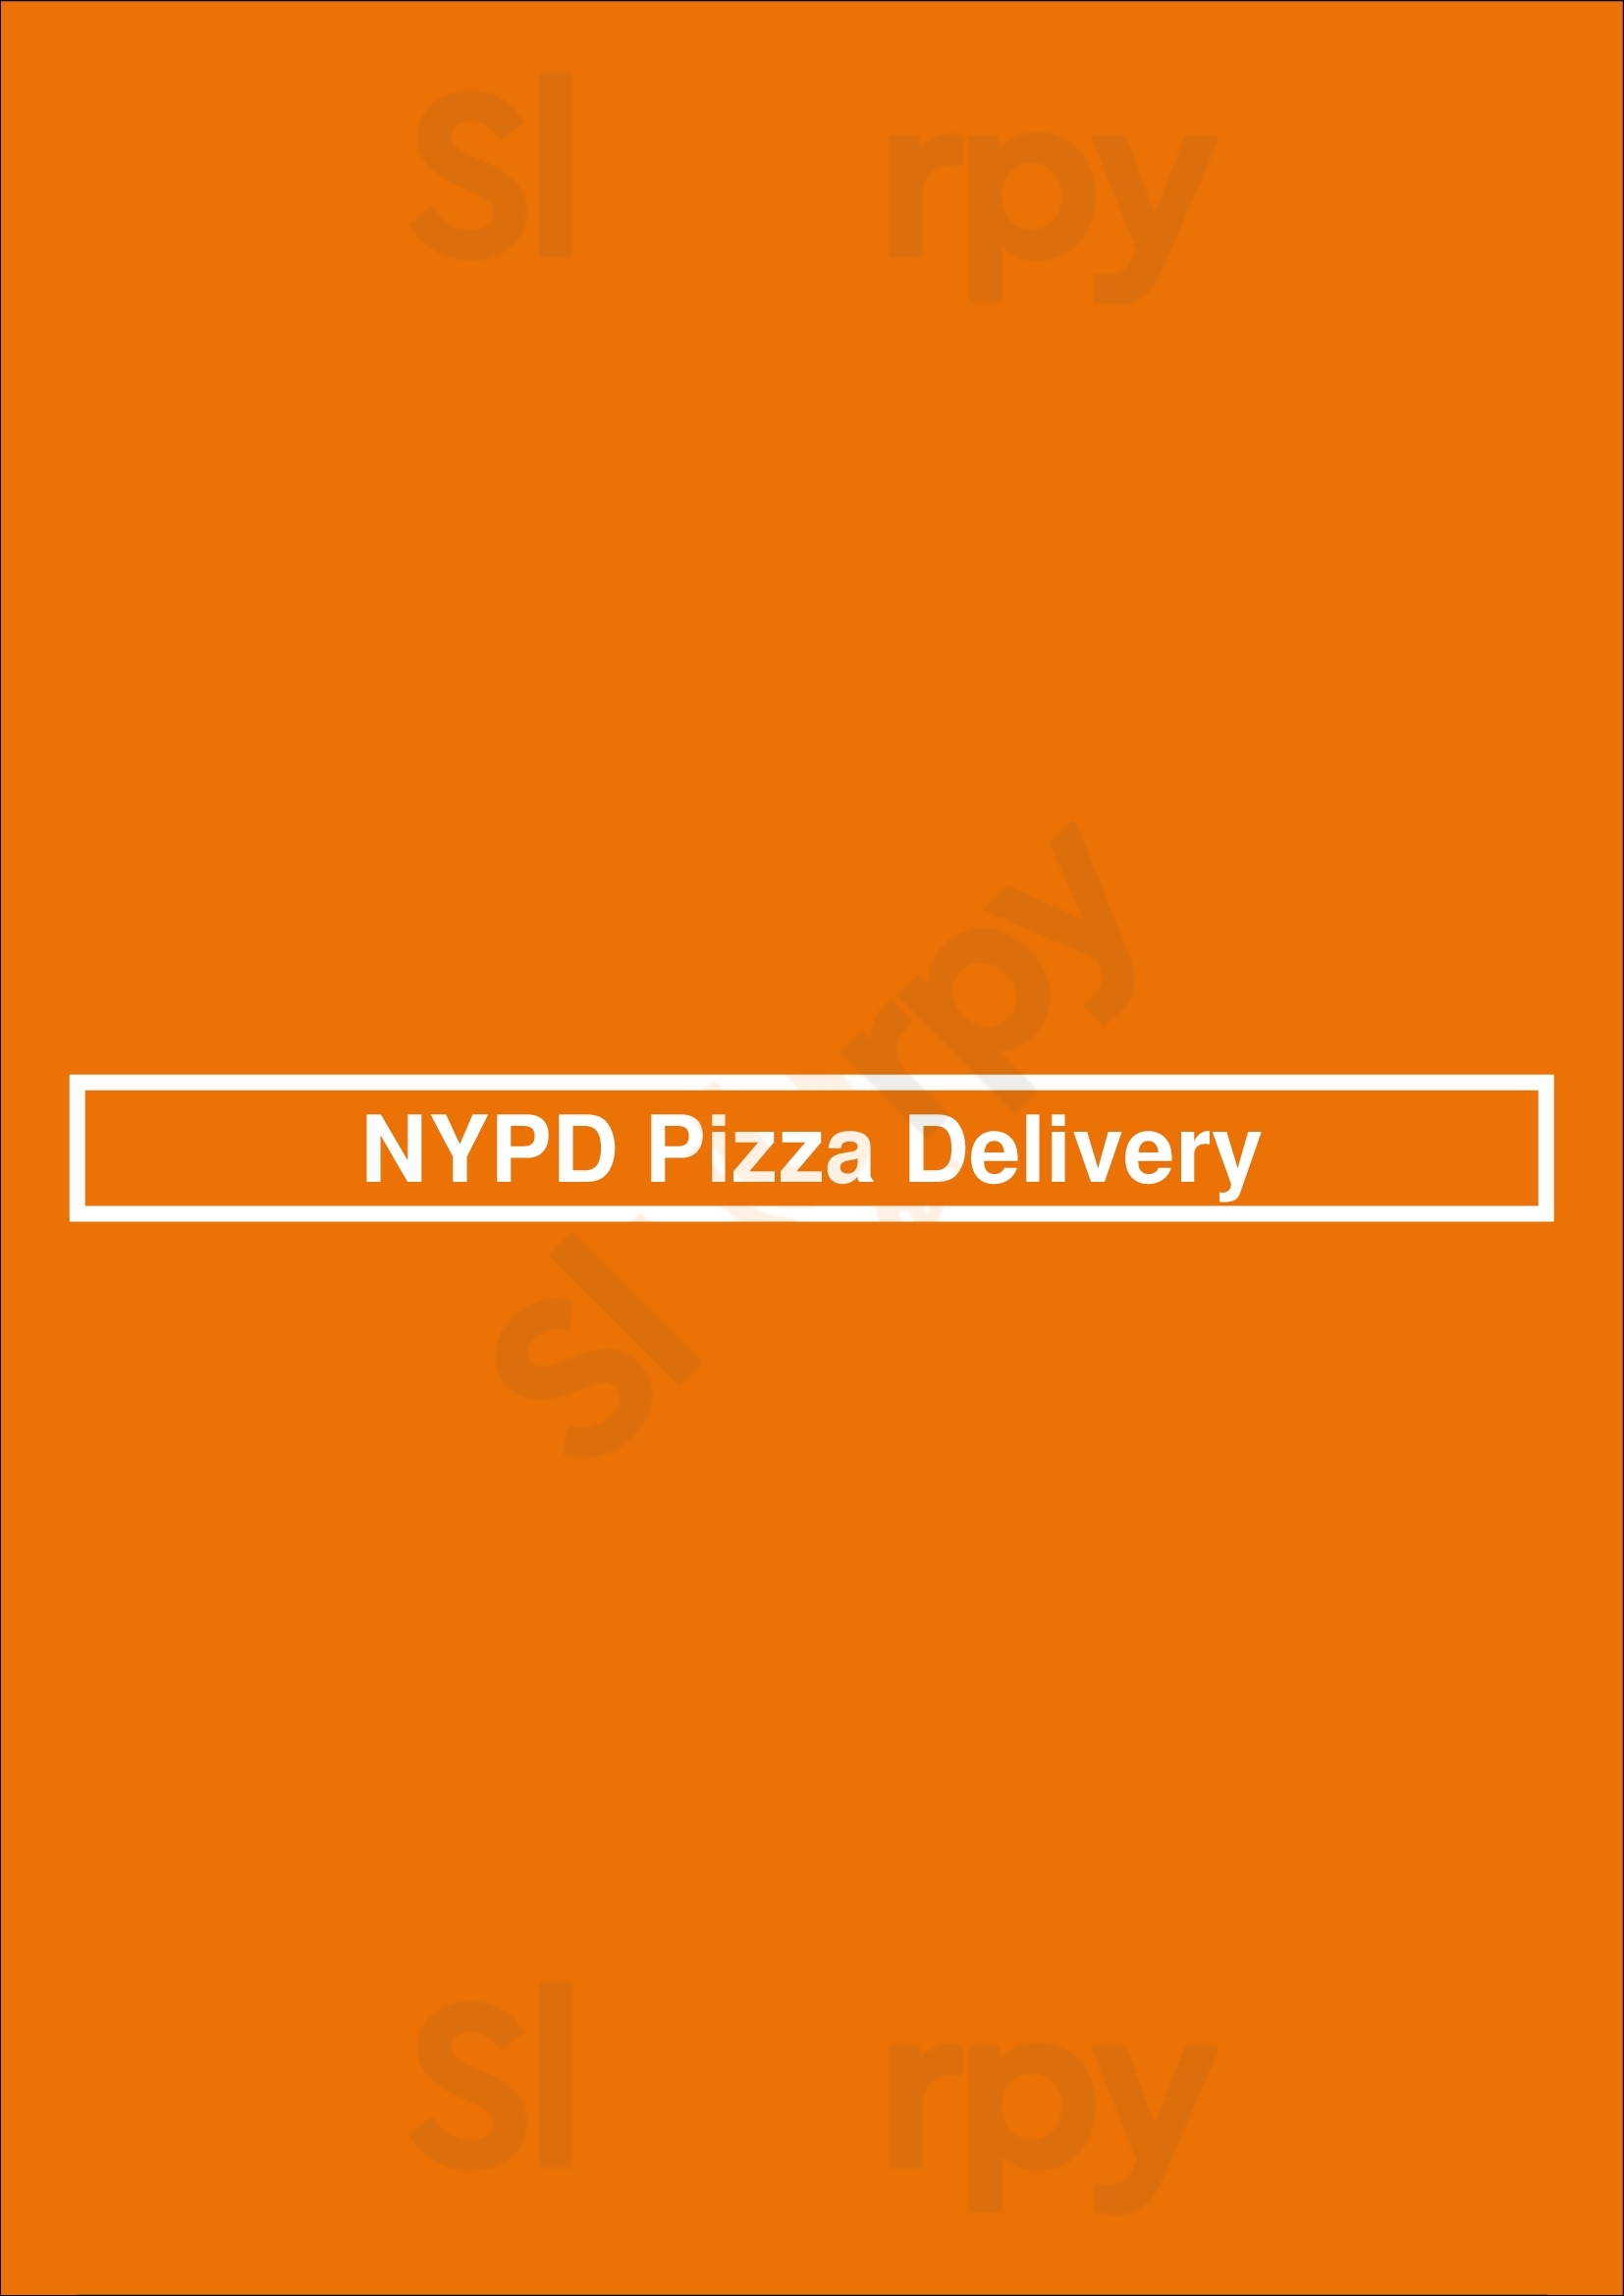 Nypd Pizza Delivery Cincinnati Menu - 1